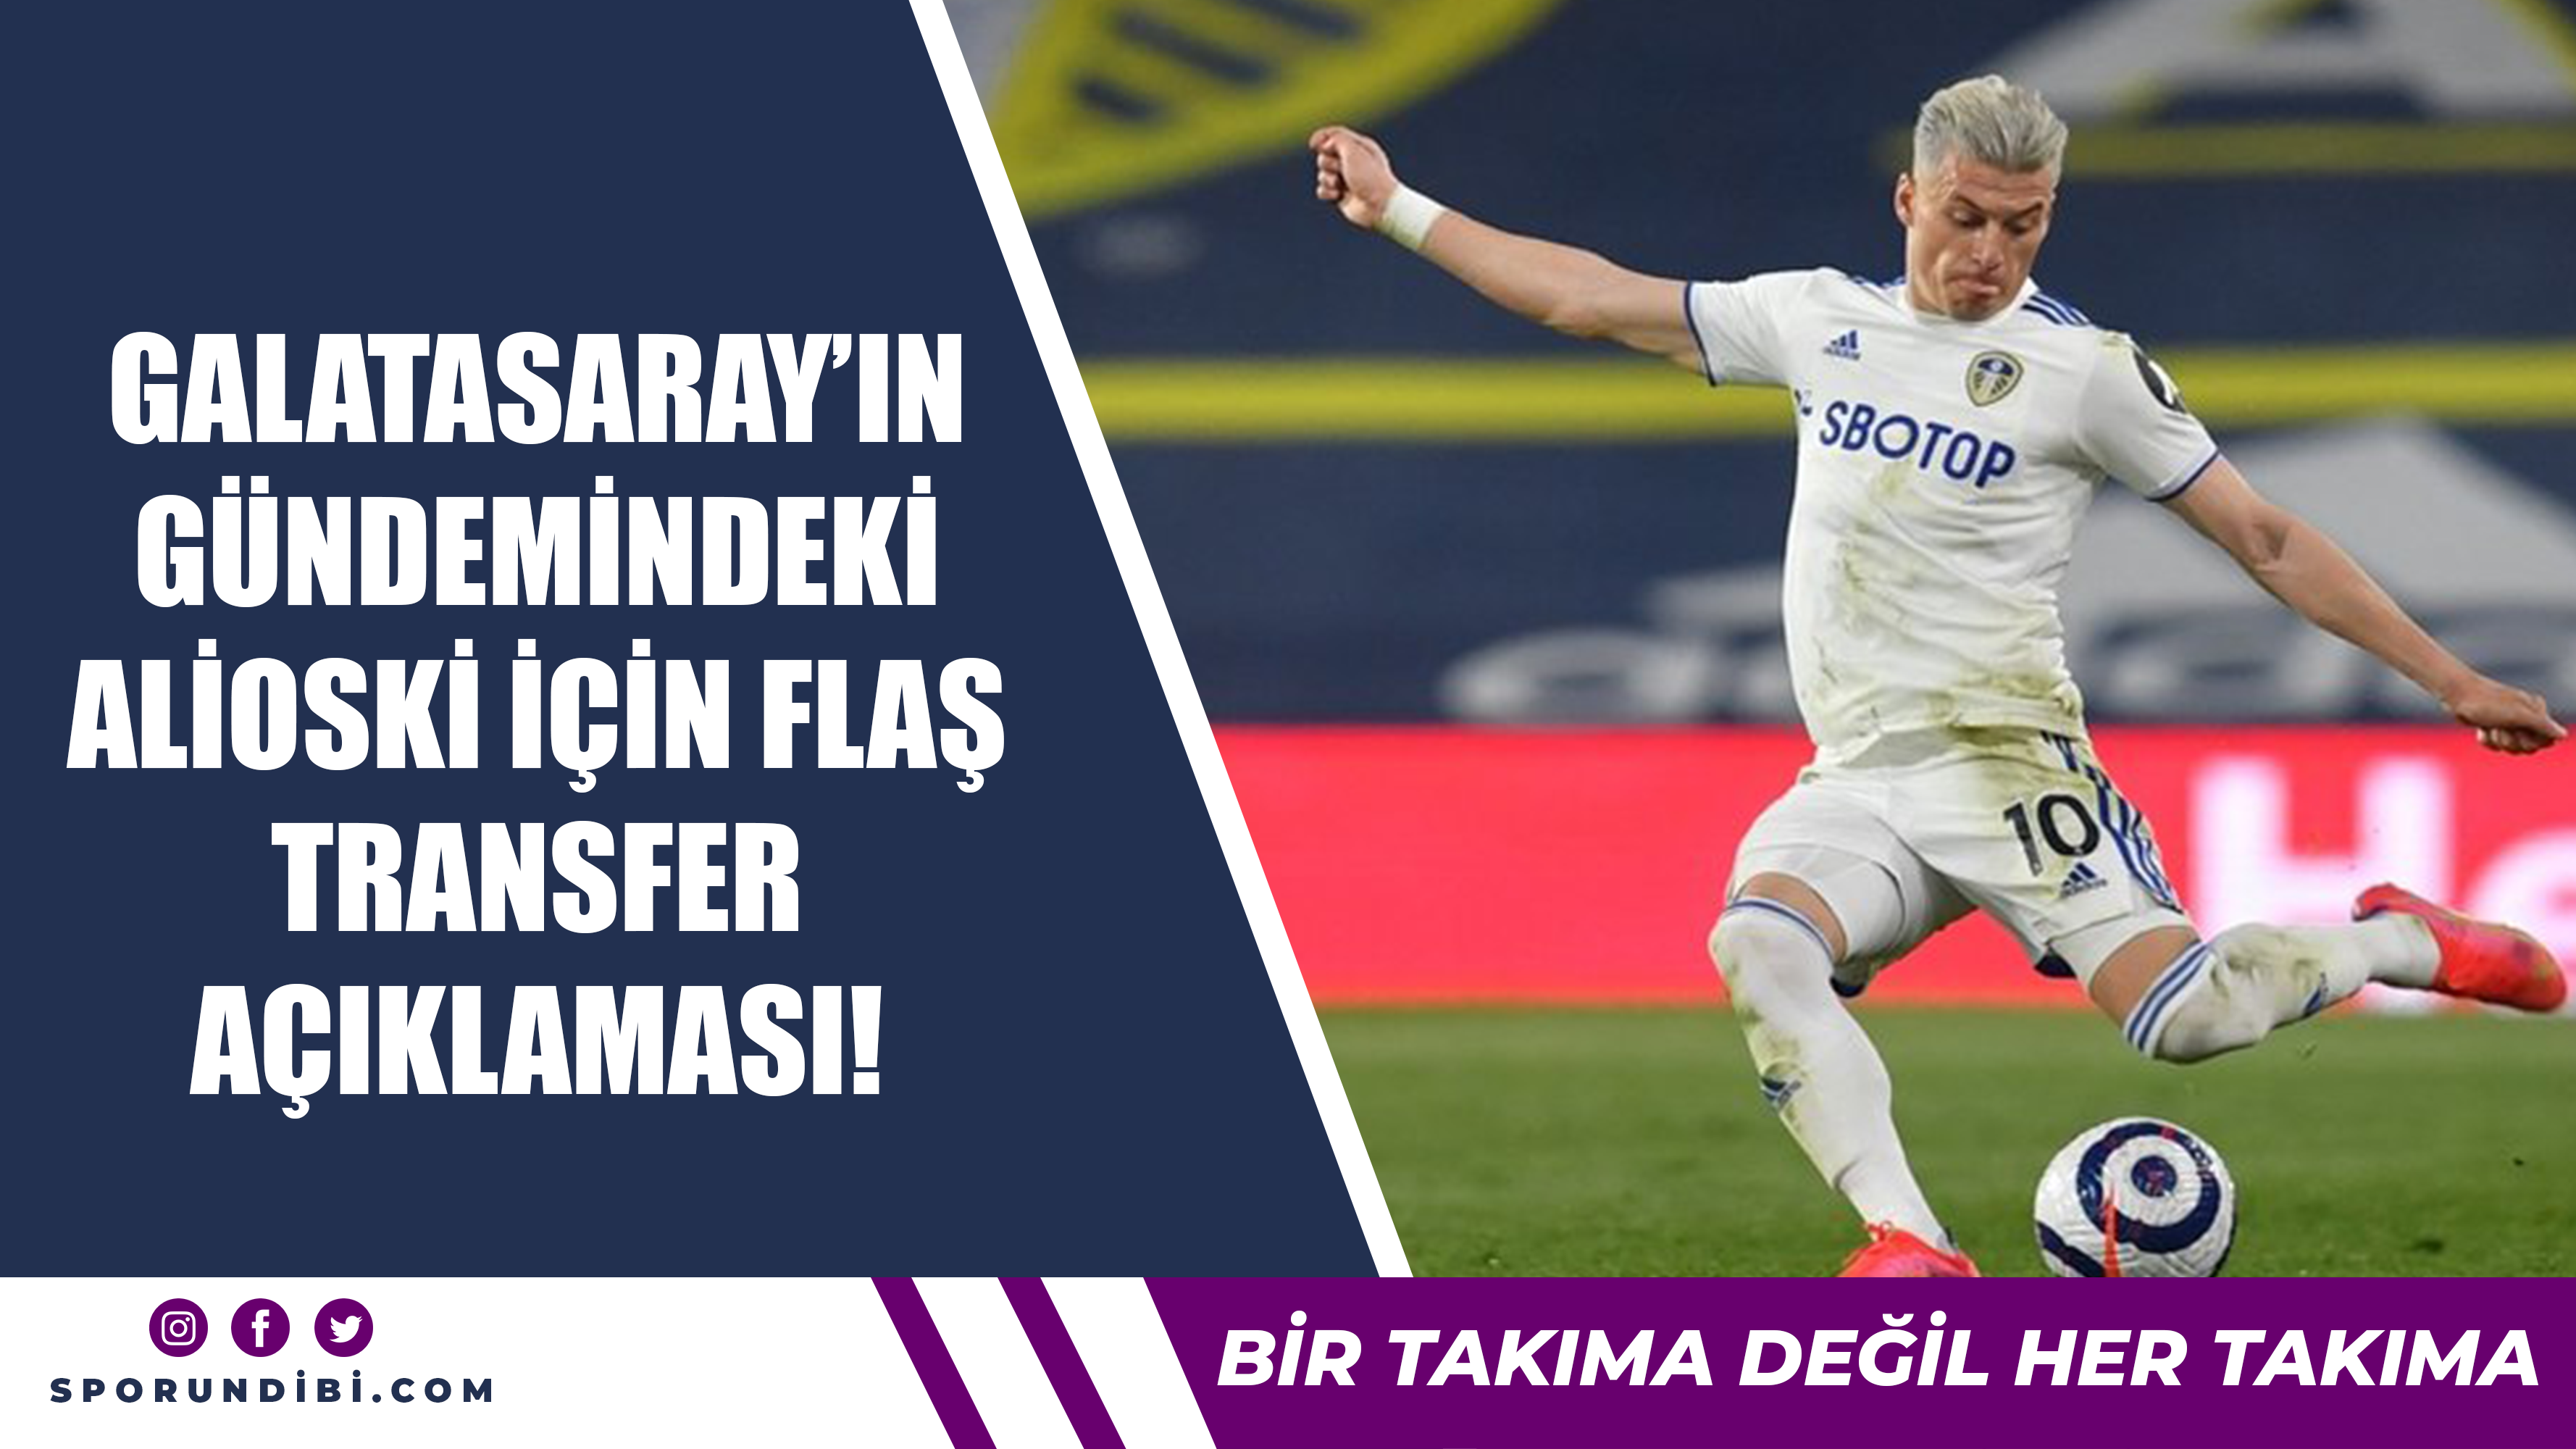 Galatasaray'ın gündemindeki Alioski için flaş transfer açıklaması!